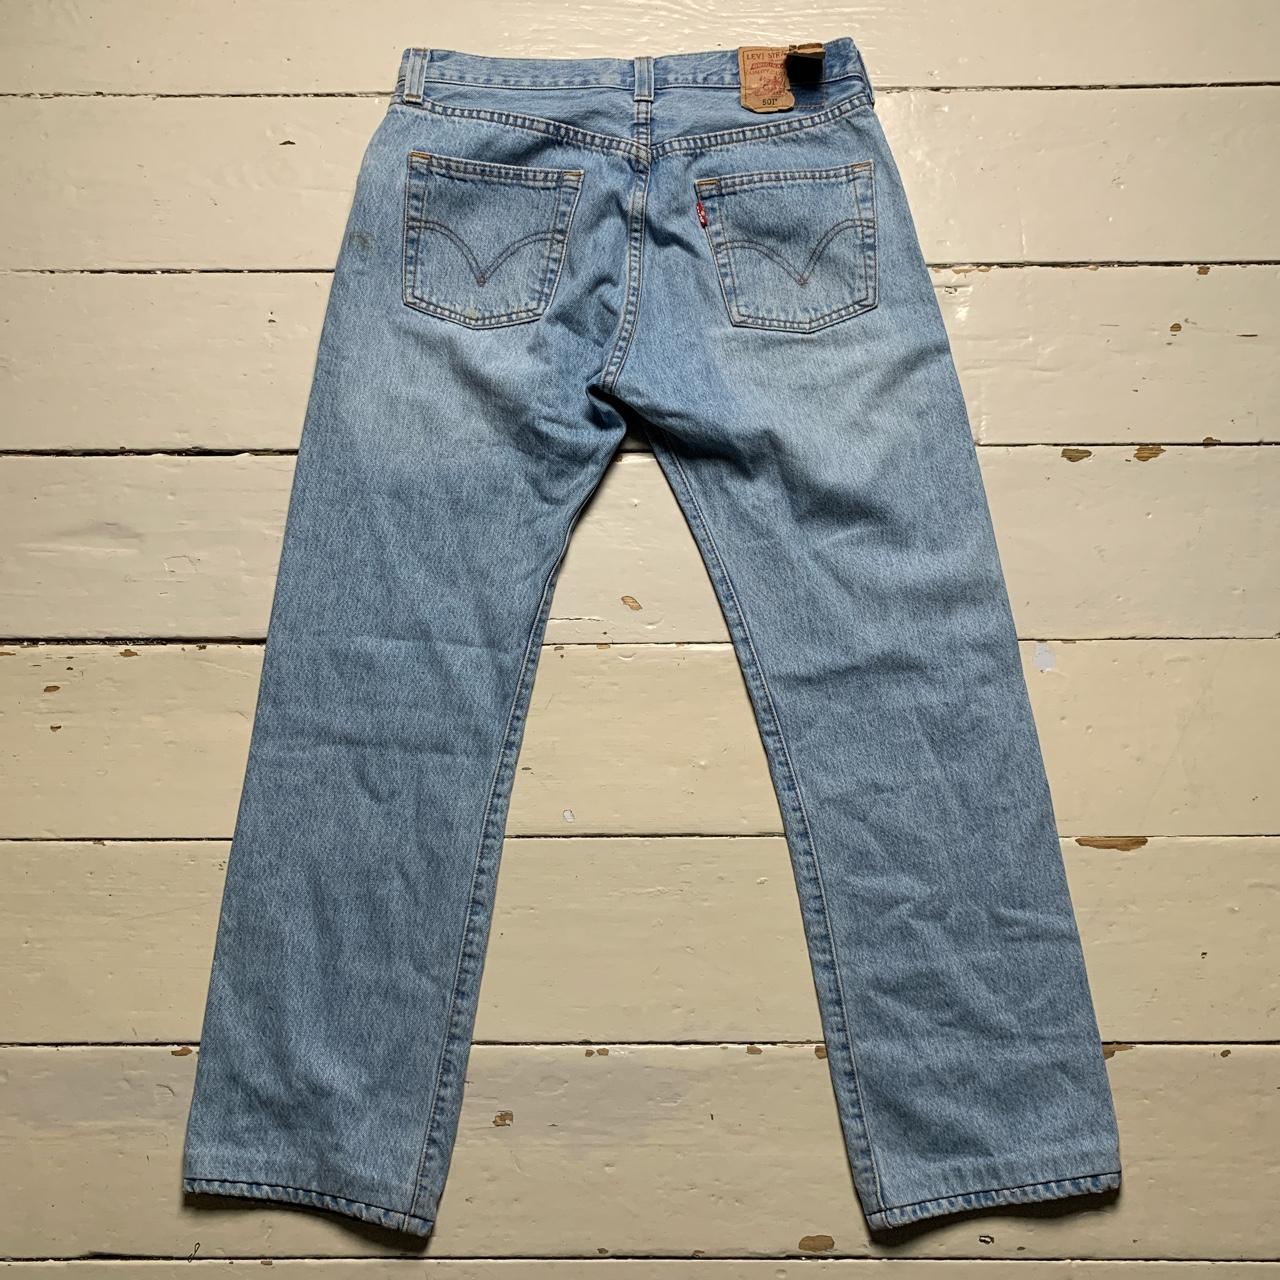 Levis 501 Light Blue Jeans